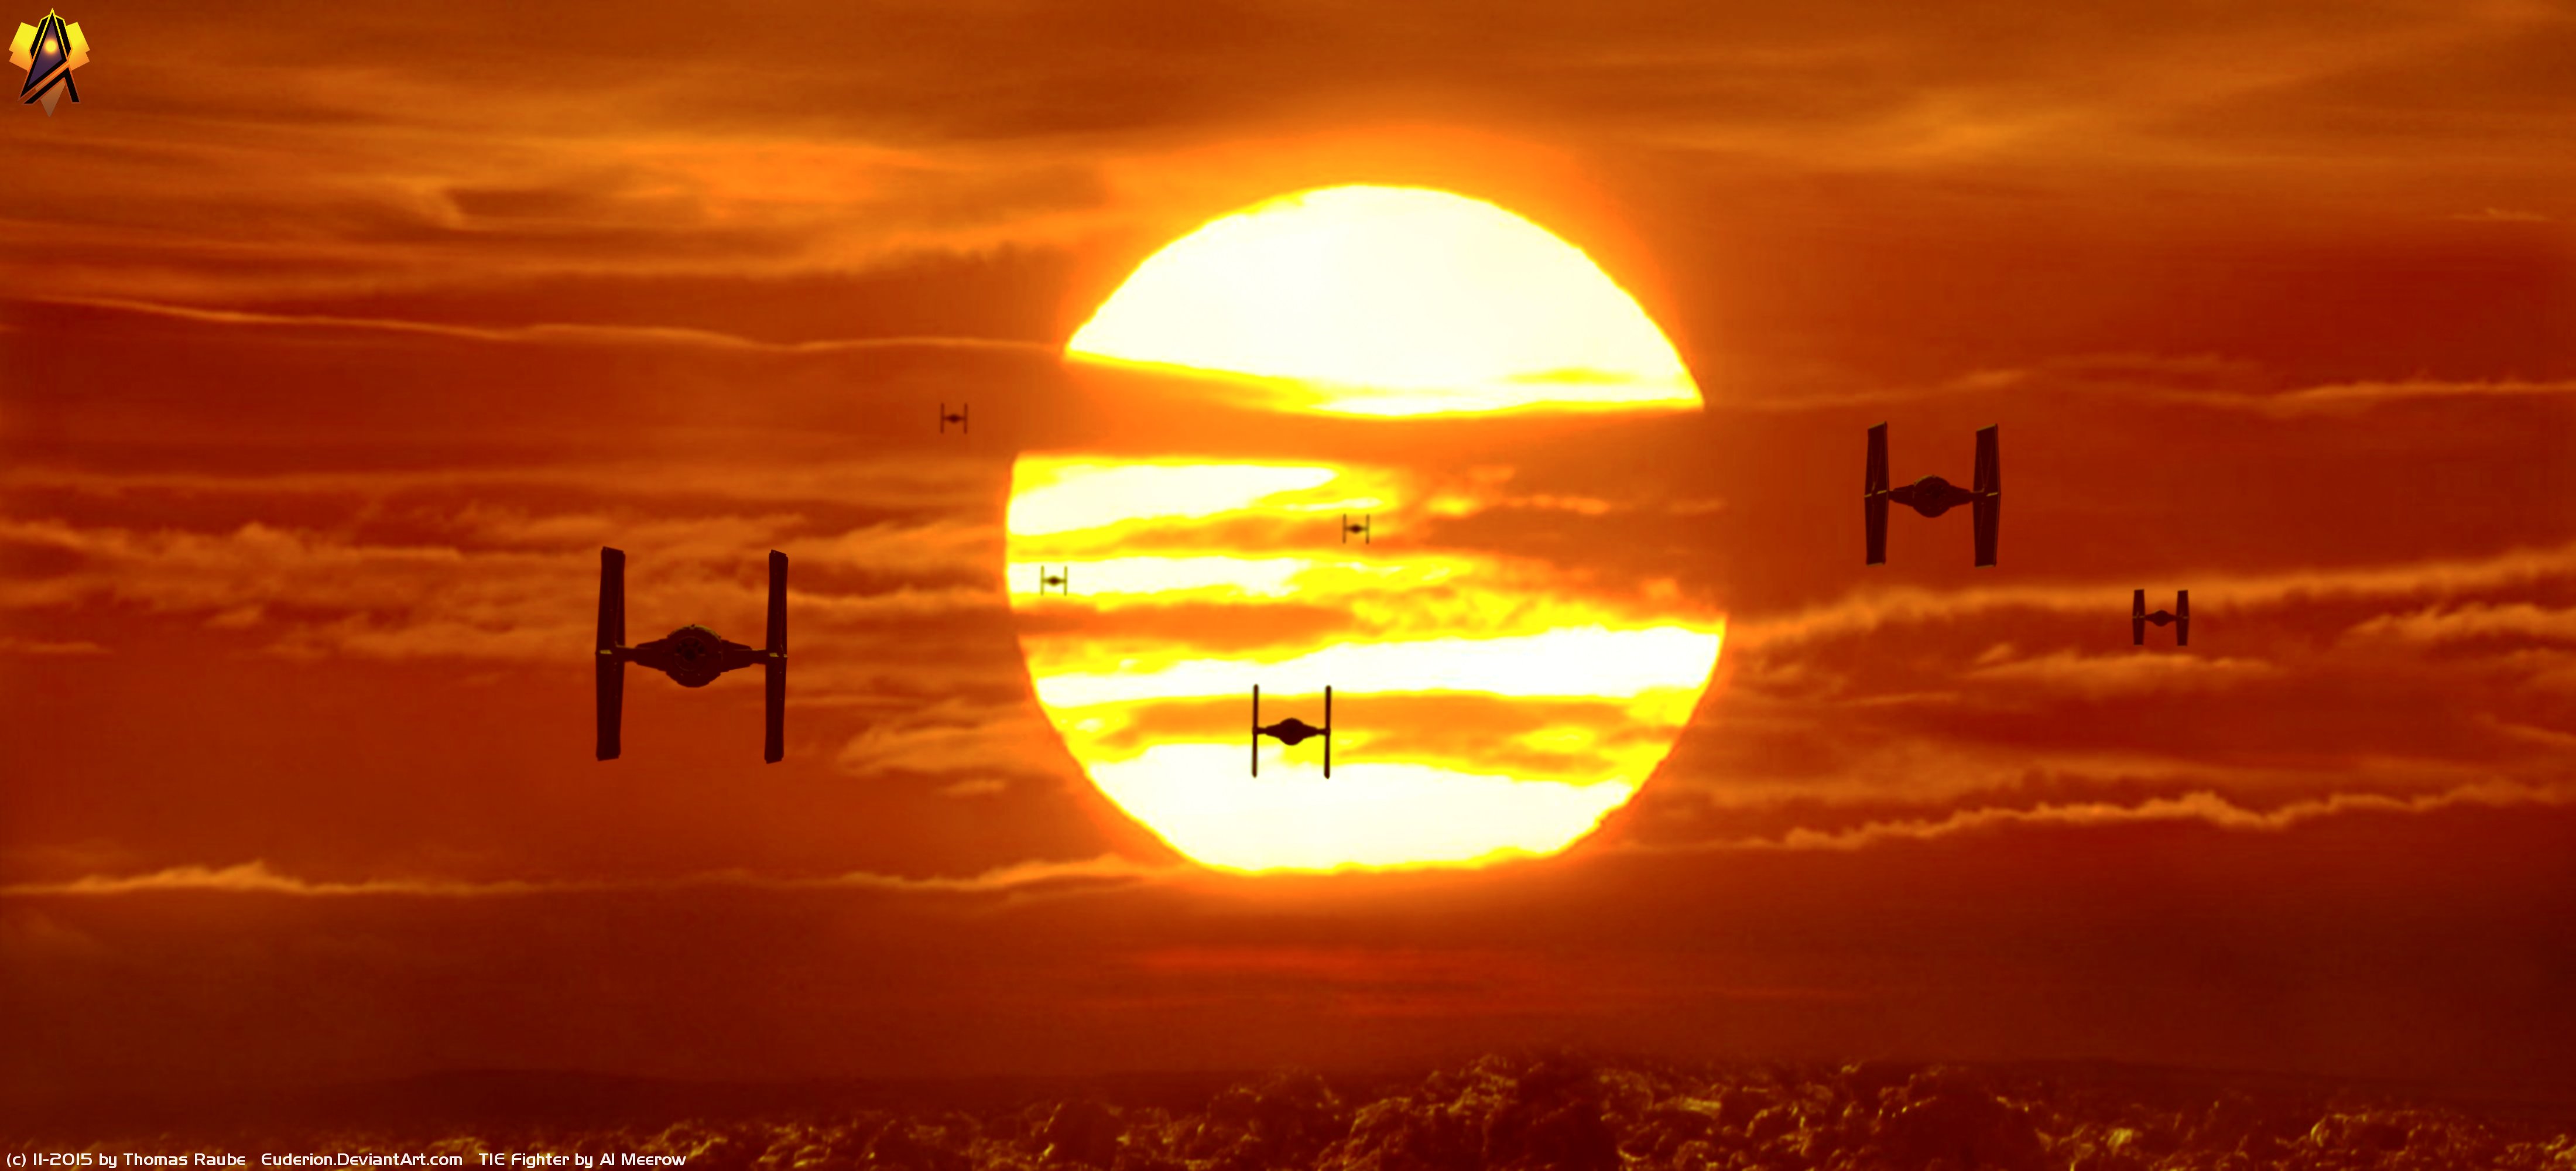  Star Wars Movie Star Wars Episode VII The Force Awakens 665324